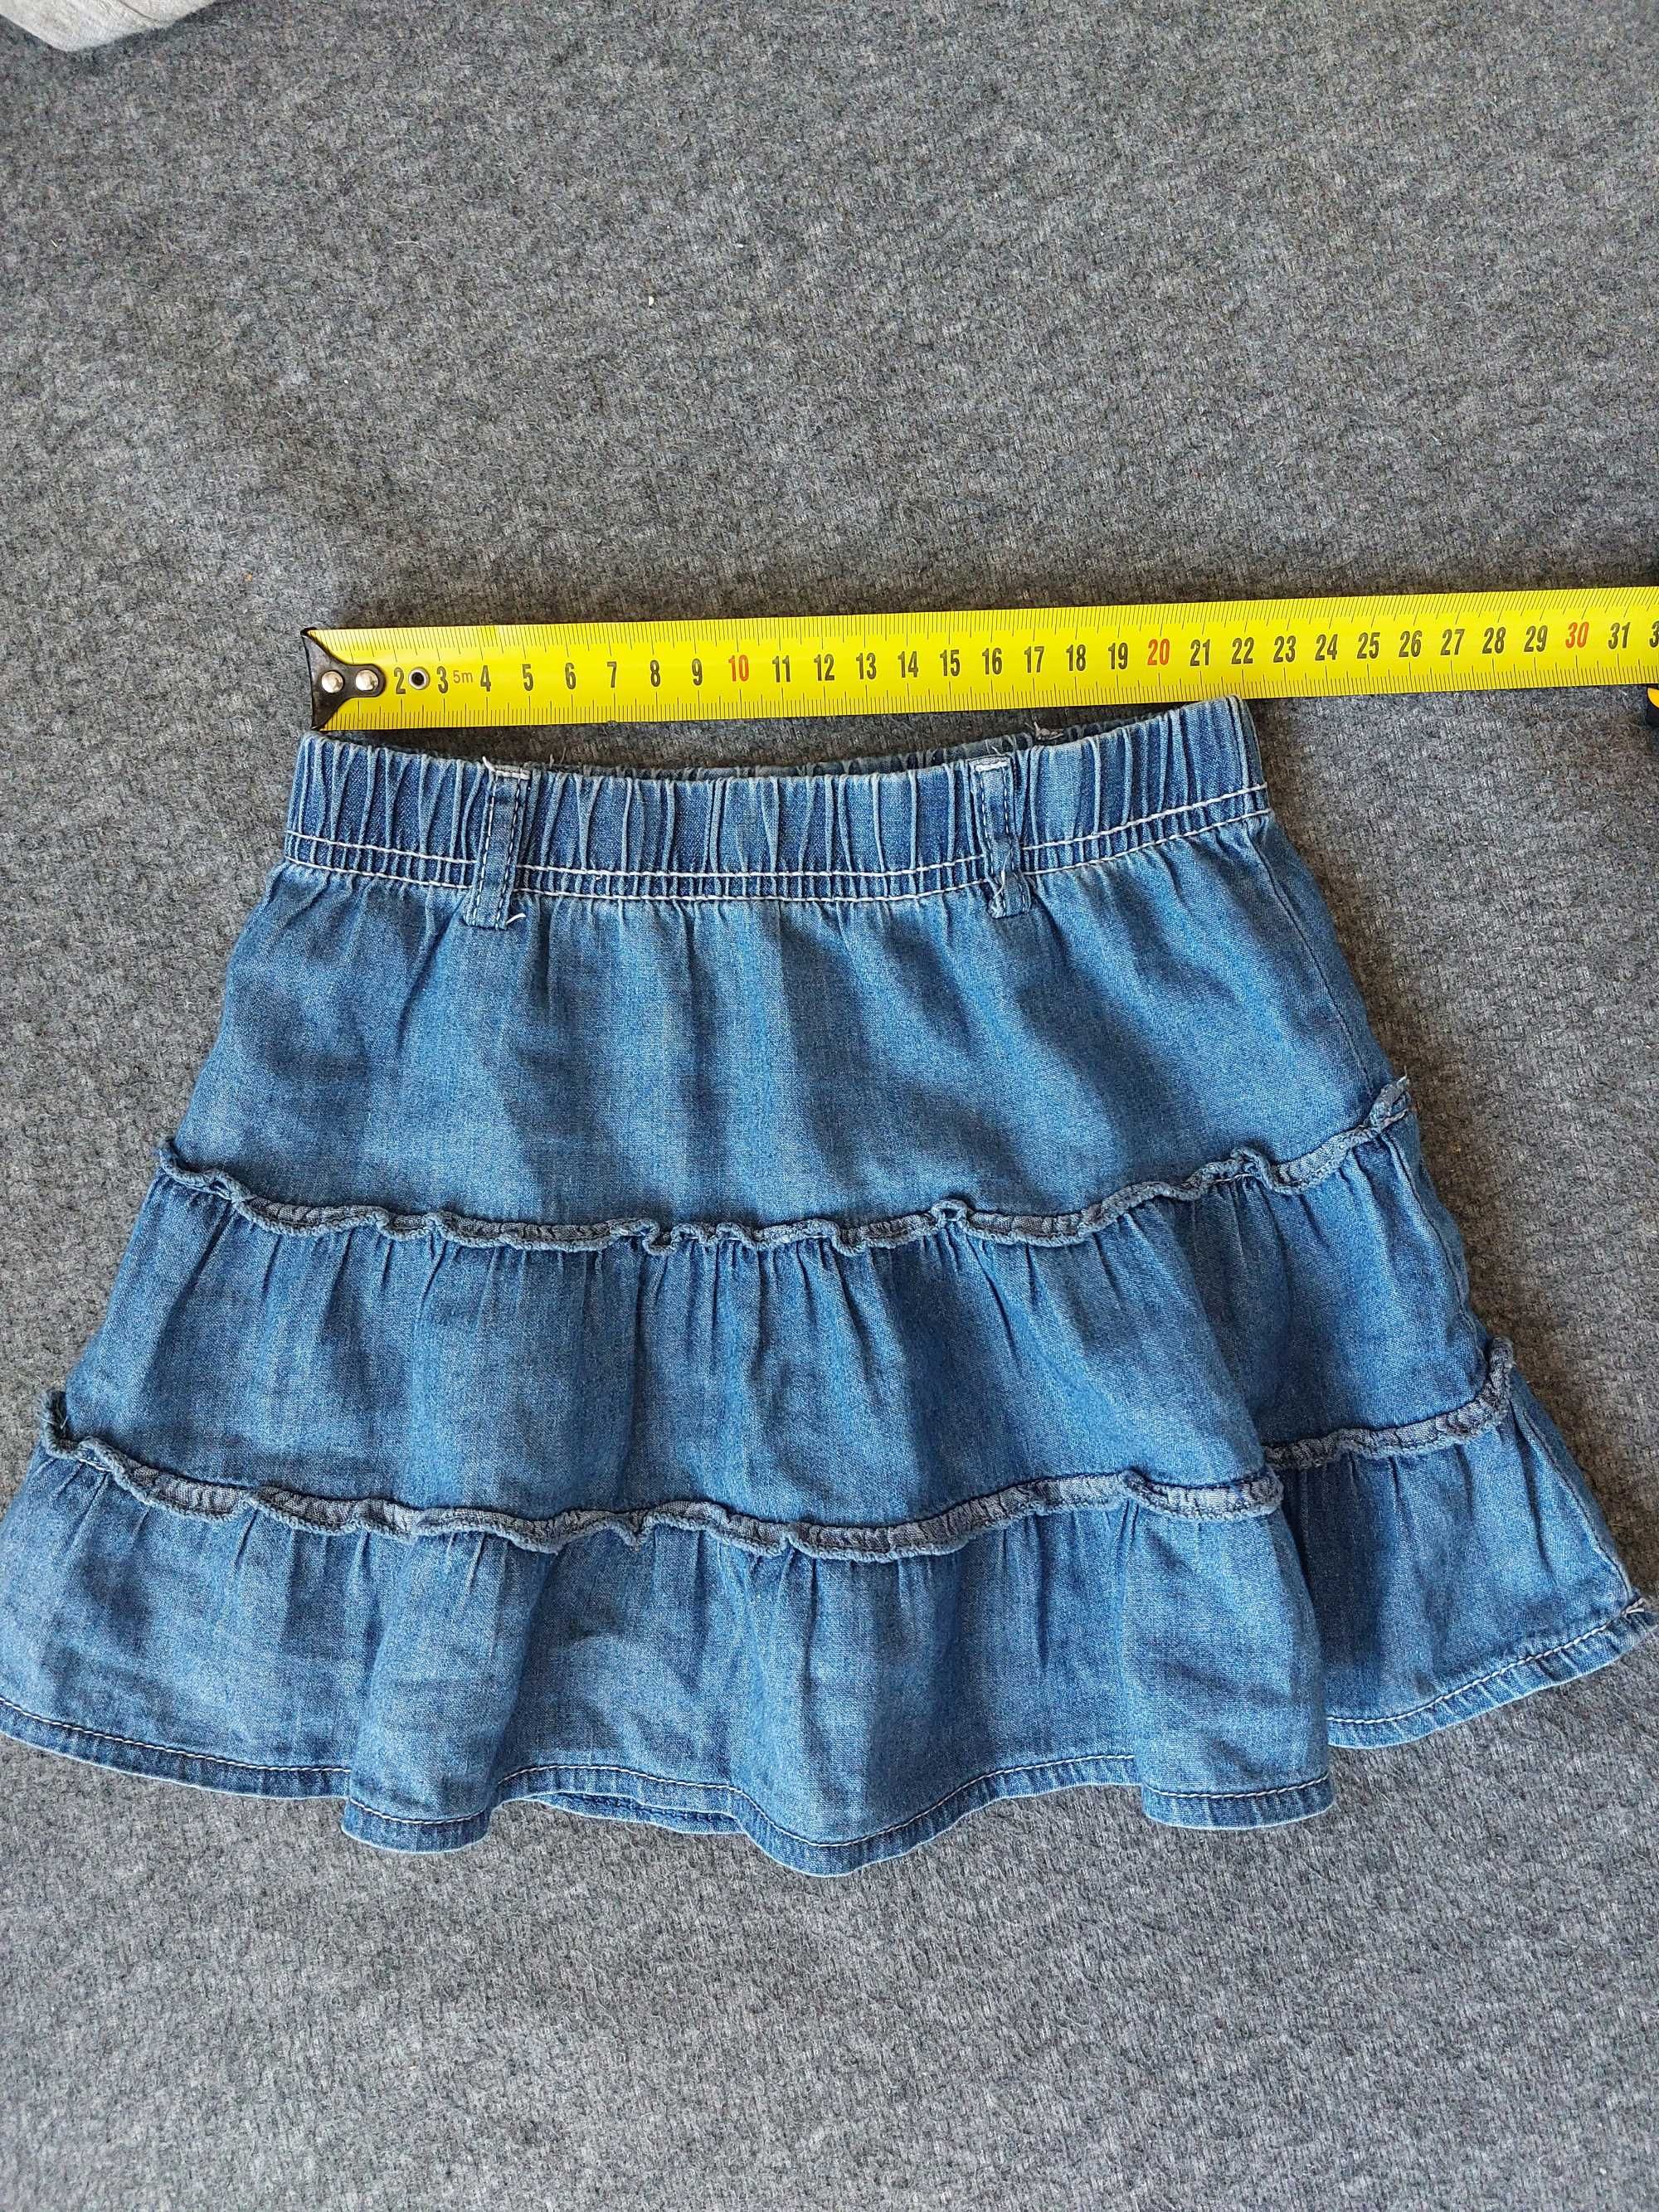 Spódnica spódniczka jeansowa r. 104